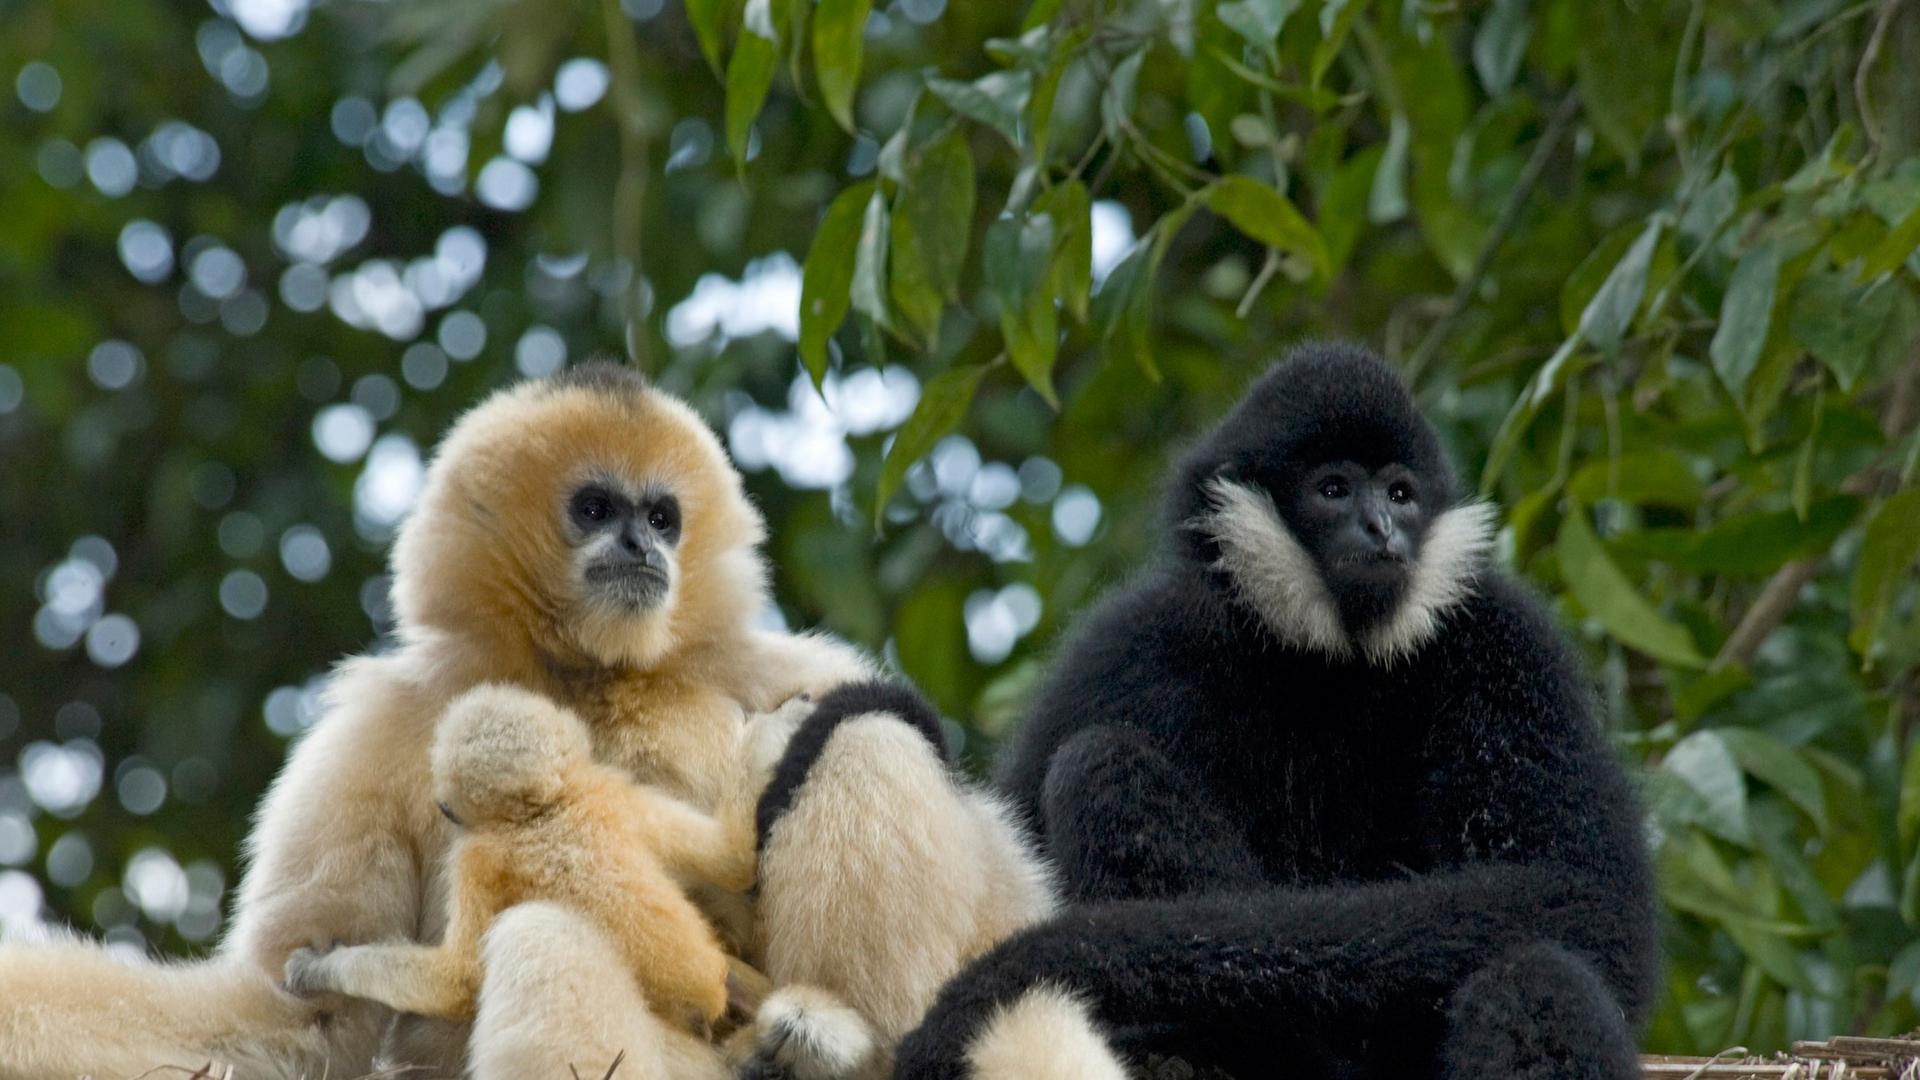 Ein blondes Weibchen mit seinem ebenfalls blonden Kind und der schwarze Vater, allesamt Nördliche Weißwangengibbons, sitzen auf einem Holzstapel.